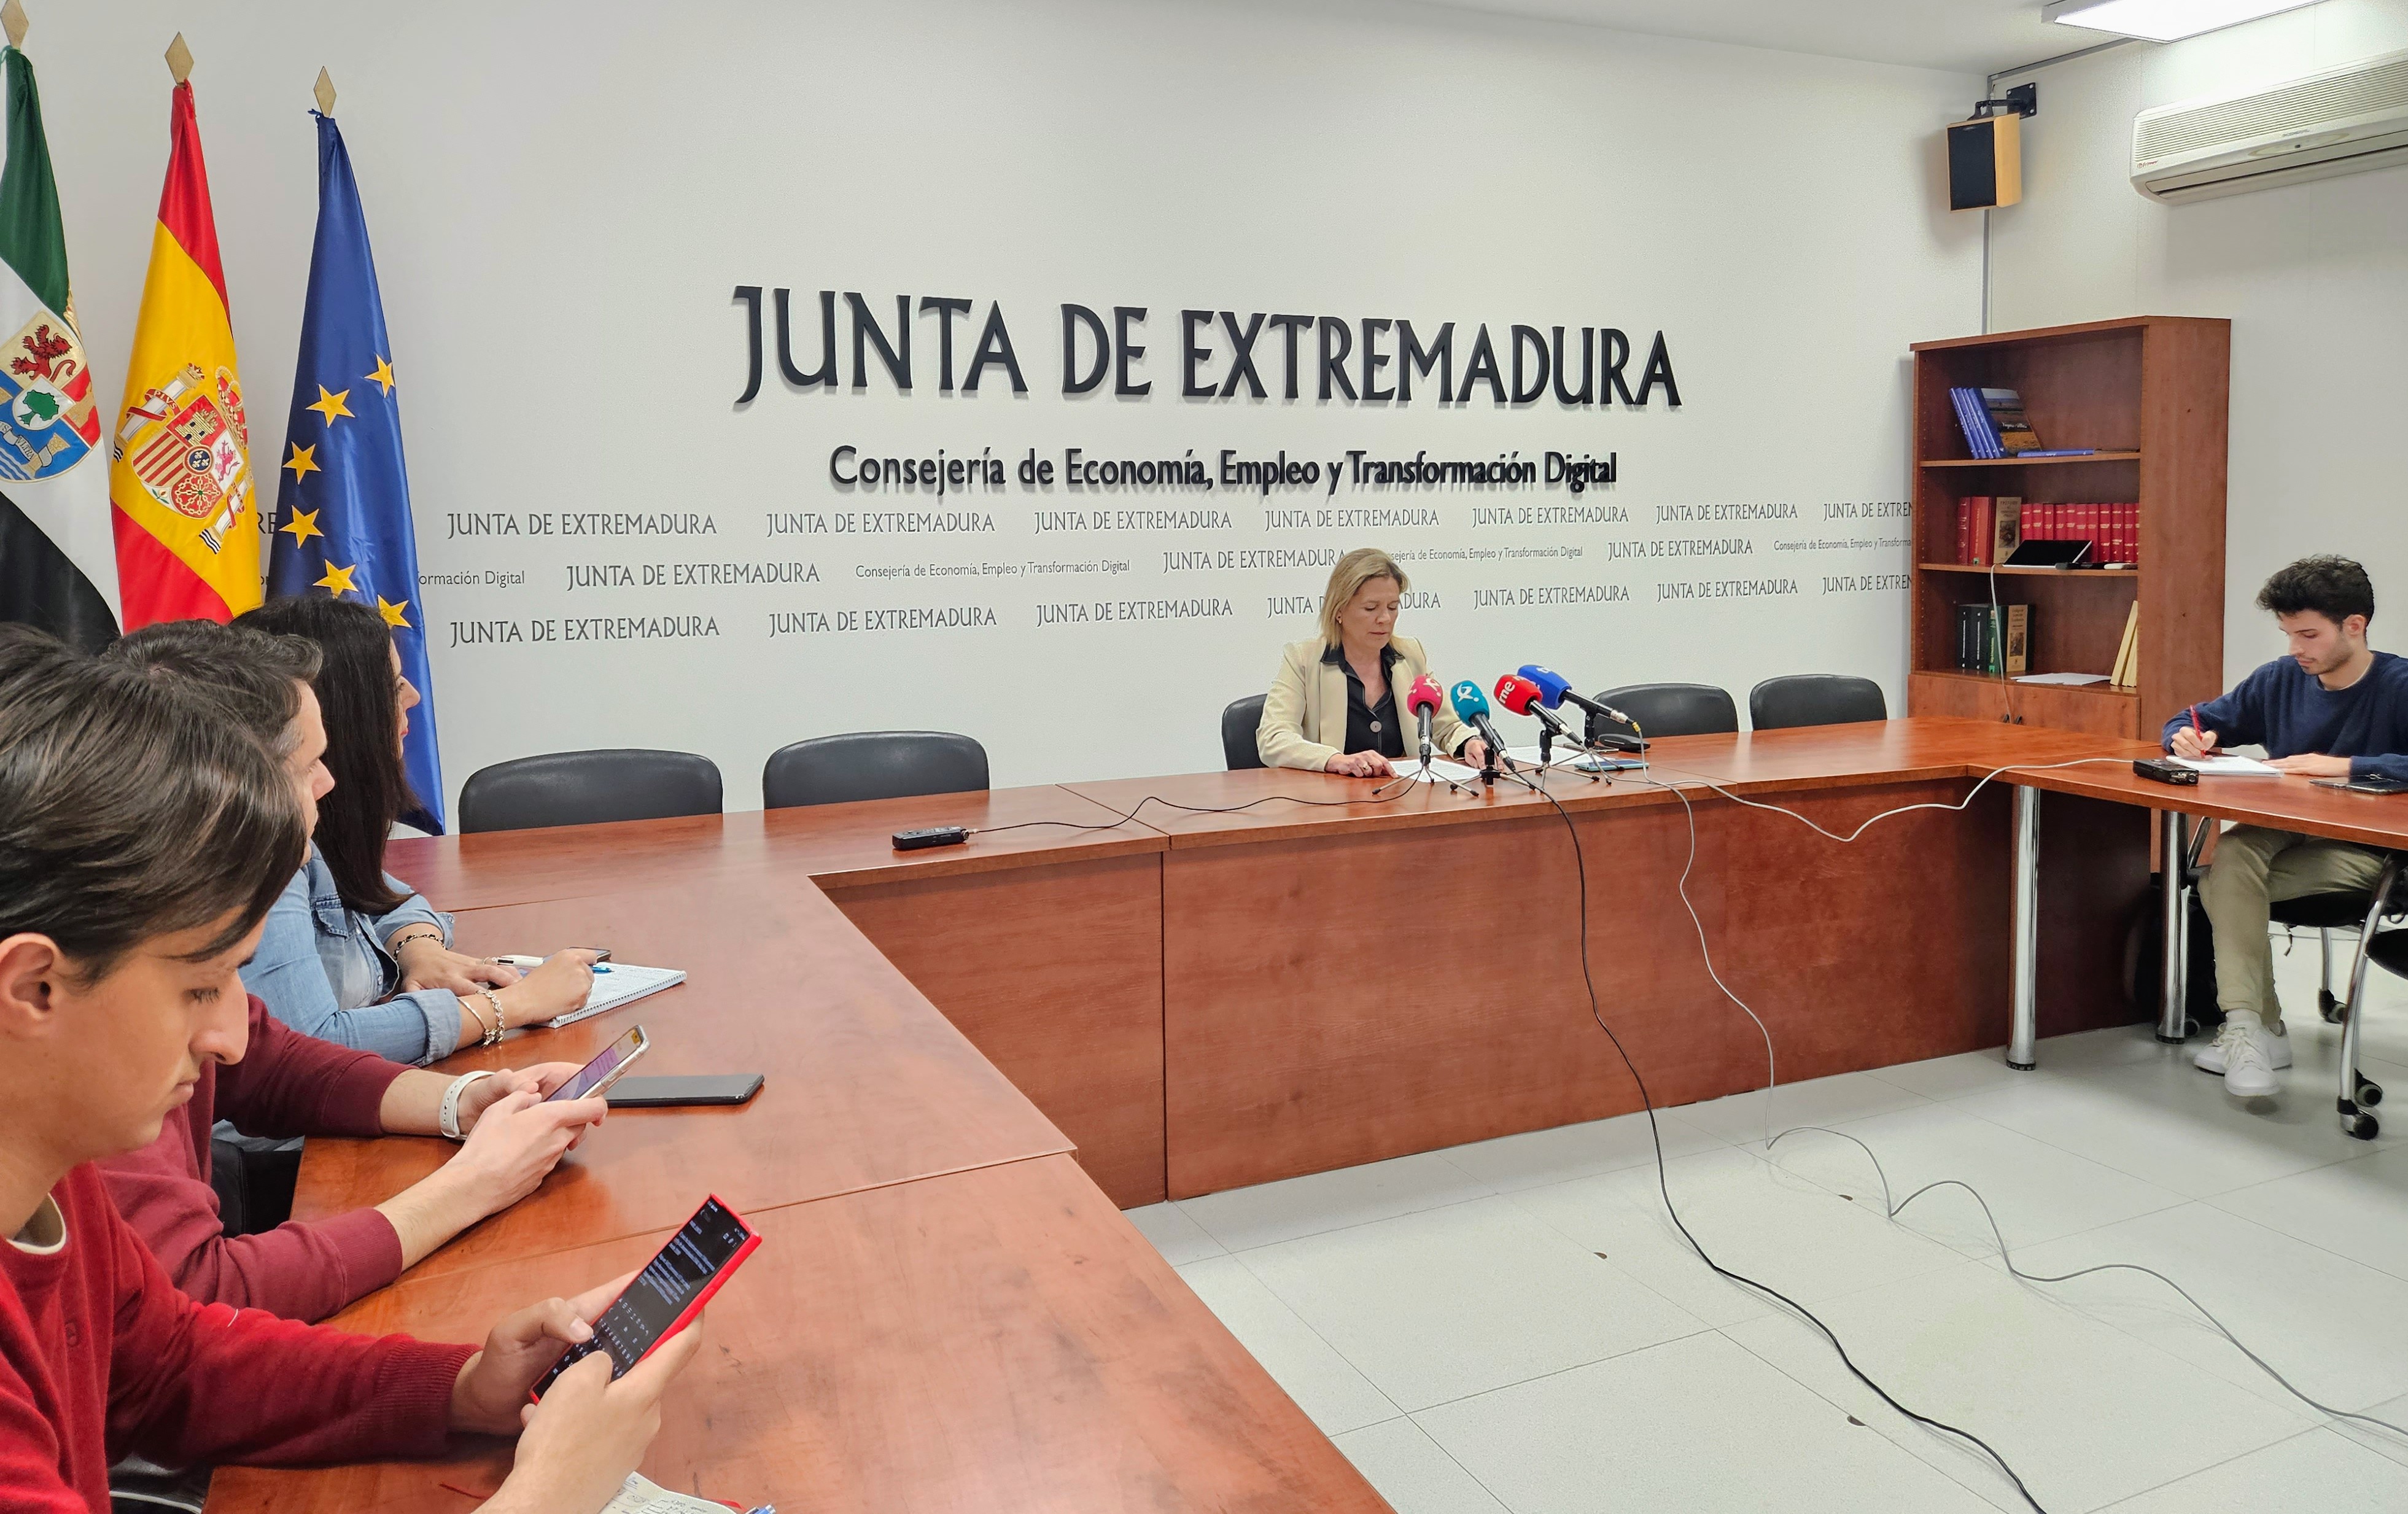 Image 1 of article El paro baja en Extremadura en 1.364 personas y sube la afiliación a la Seguridad Social con 1.416 nuevas altas